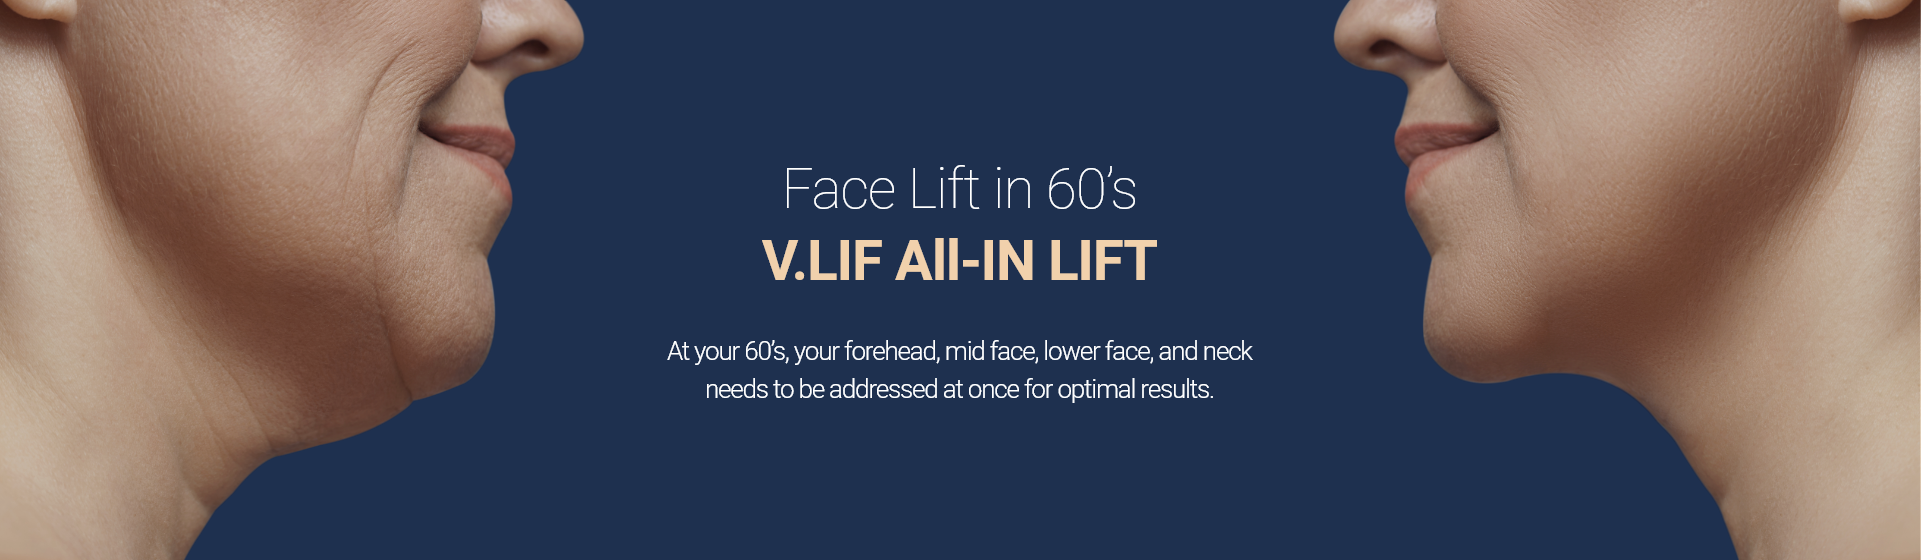 60대 안면거상술 빌리프 올인거상술 - 60대에는 안면뿐만 아니라, 목주름까지! 한번에 해결해야 됩니다.